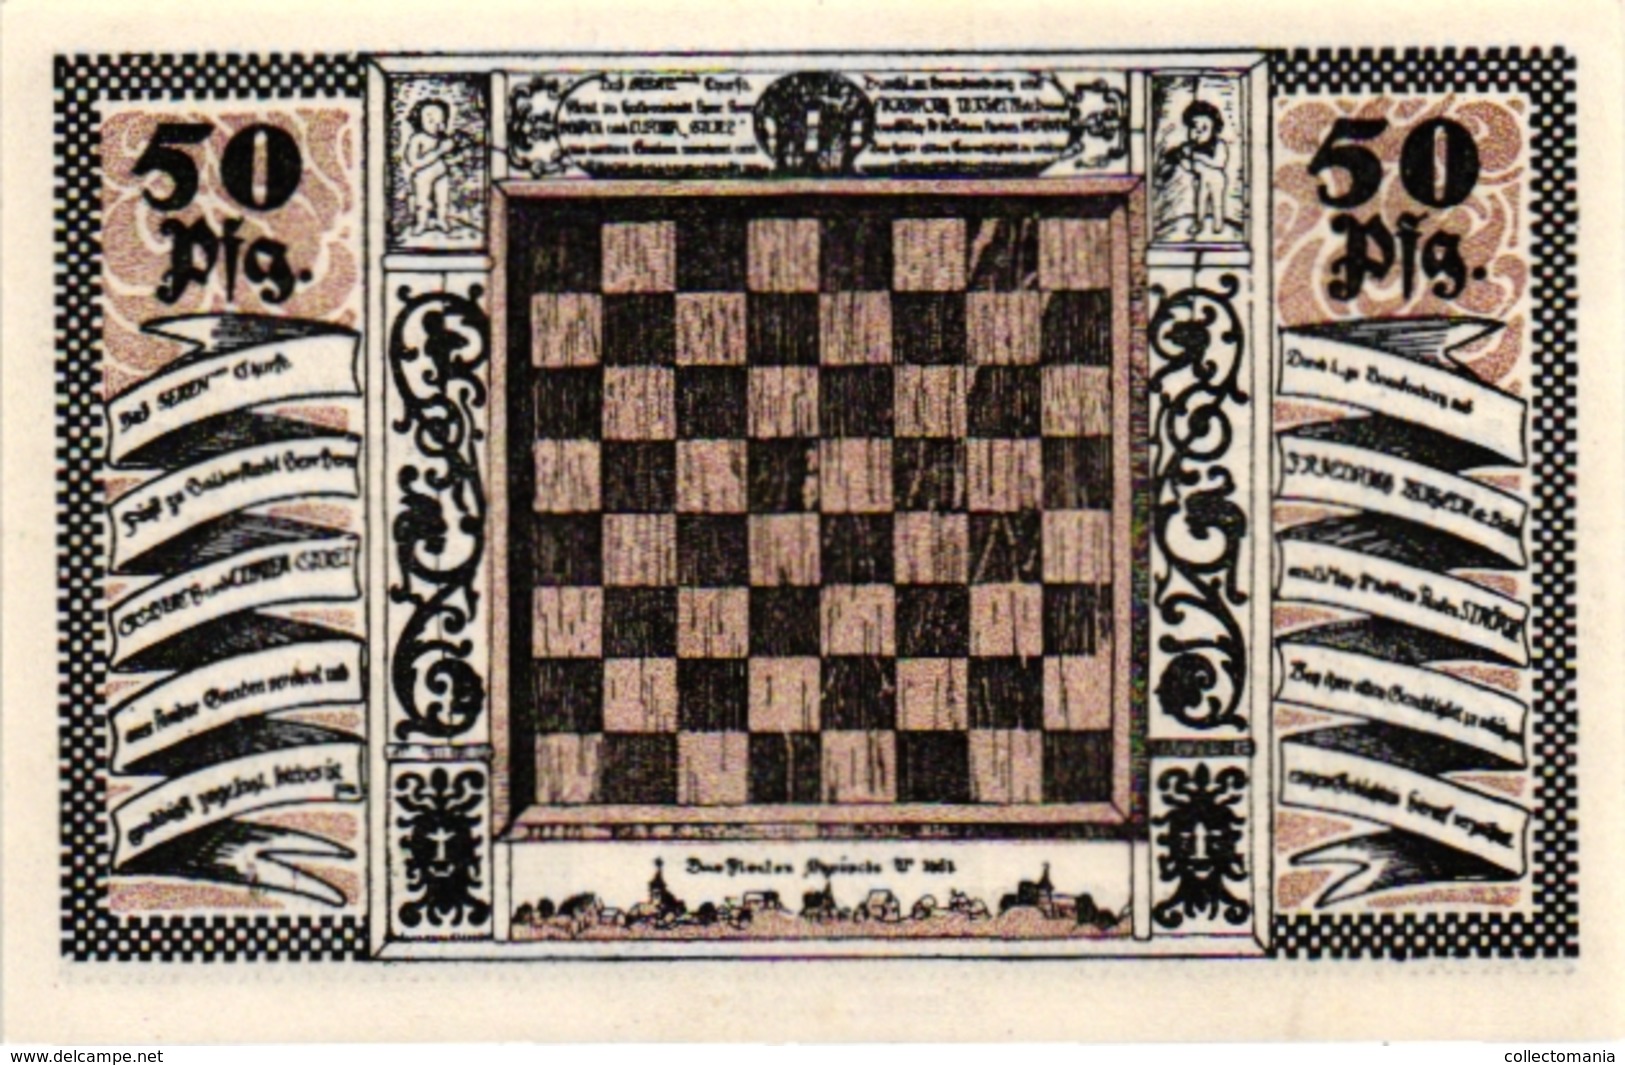 3 NOTGELD  CHESS ECHEC SCHACH Gemeinde Stroebeck 1921Gutschein - Chess